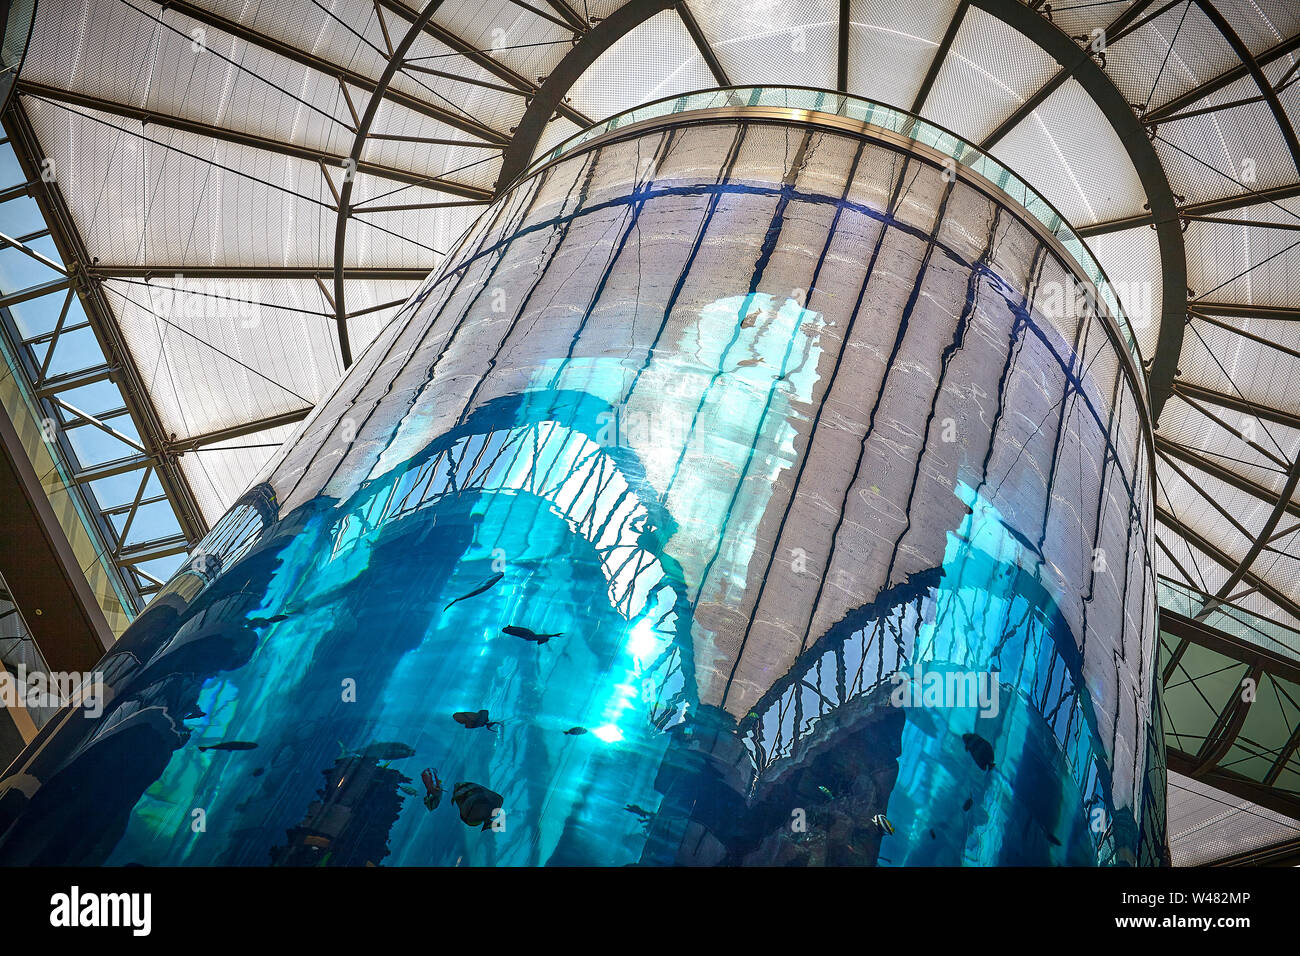 Radisson mit einem 25 Meter hohen Aquarium in einem Atrium Lobby, das stilvolle Hotel an der Spree liegt einen 10-minütigen Spaziergang vom Pergamonmuseum. Stockfoto